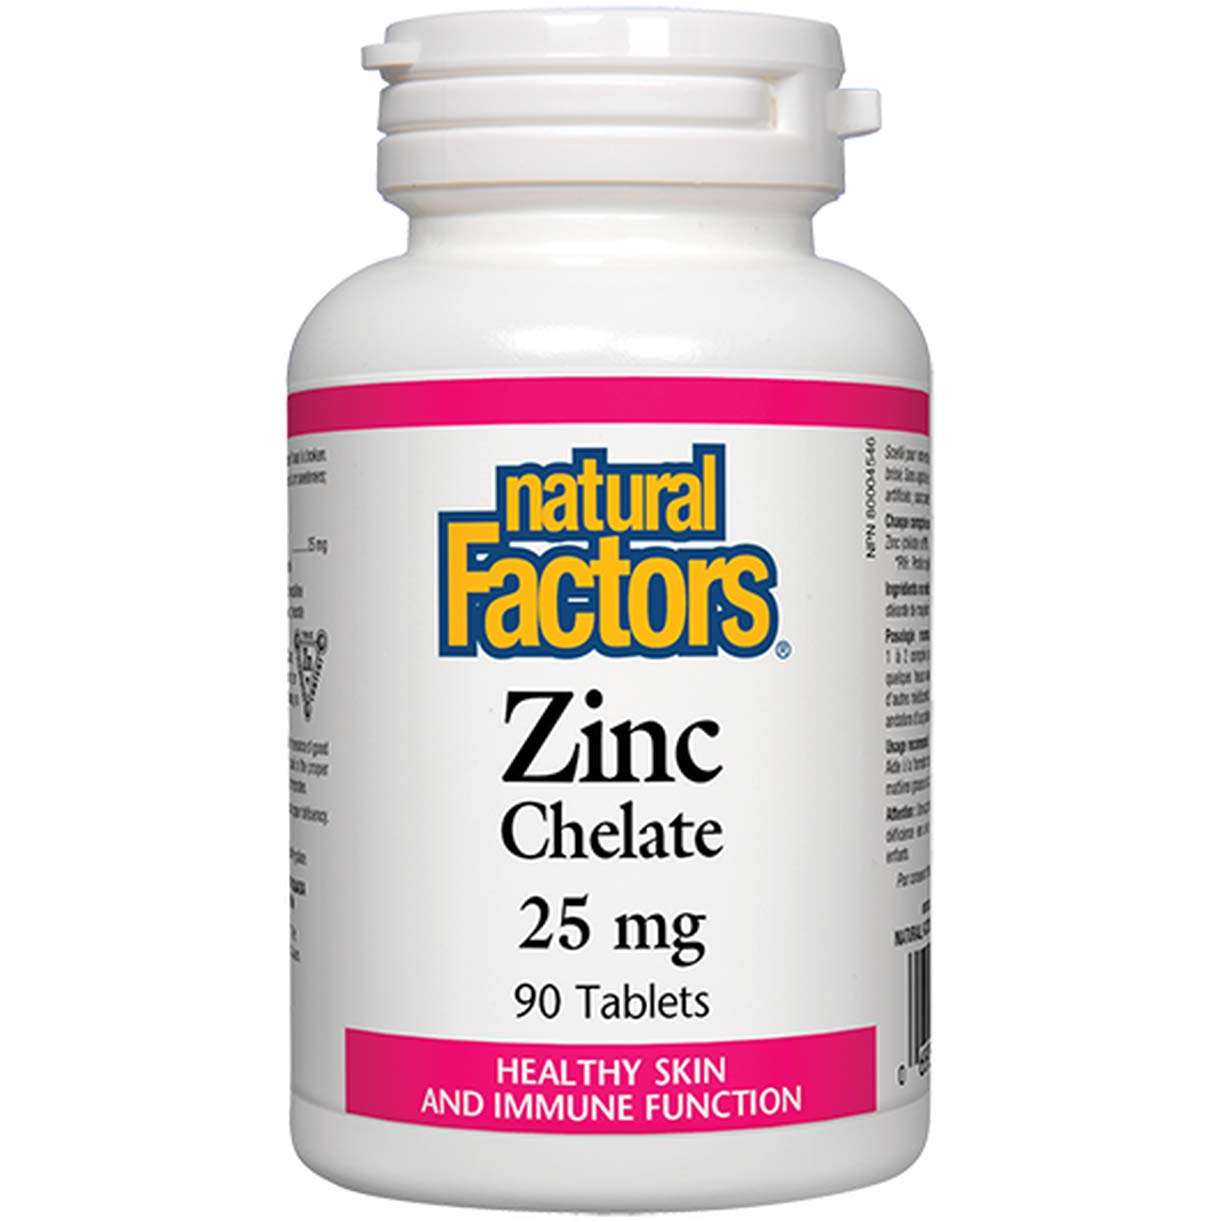 Natural Factors Zinc Chelate 90 Tablets 25 mg